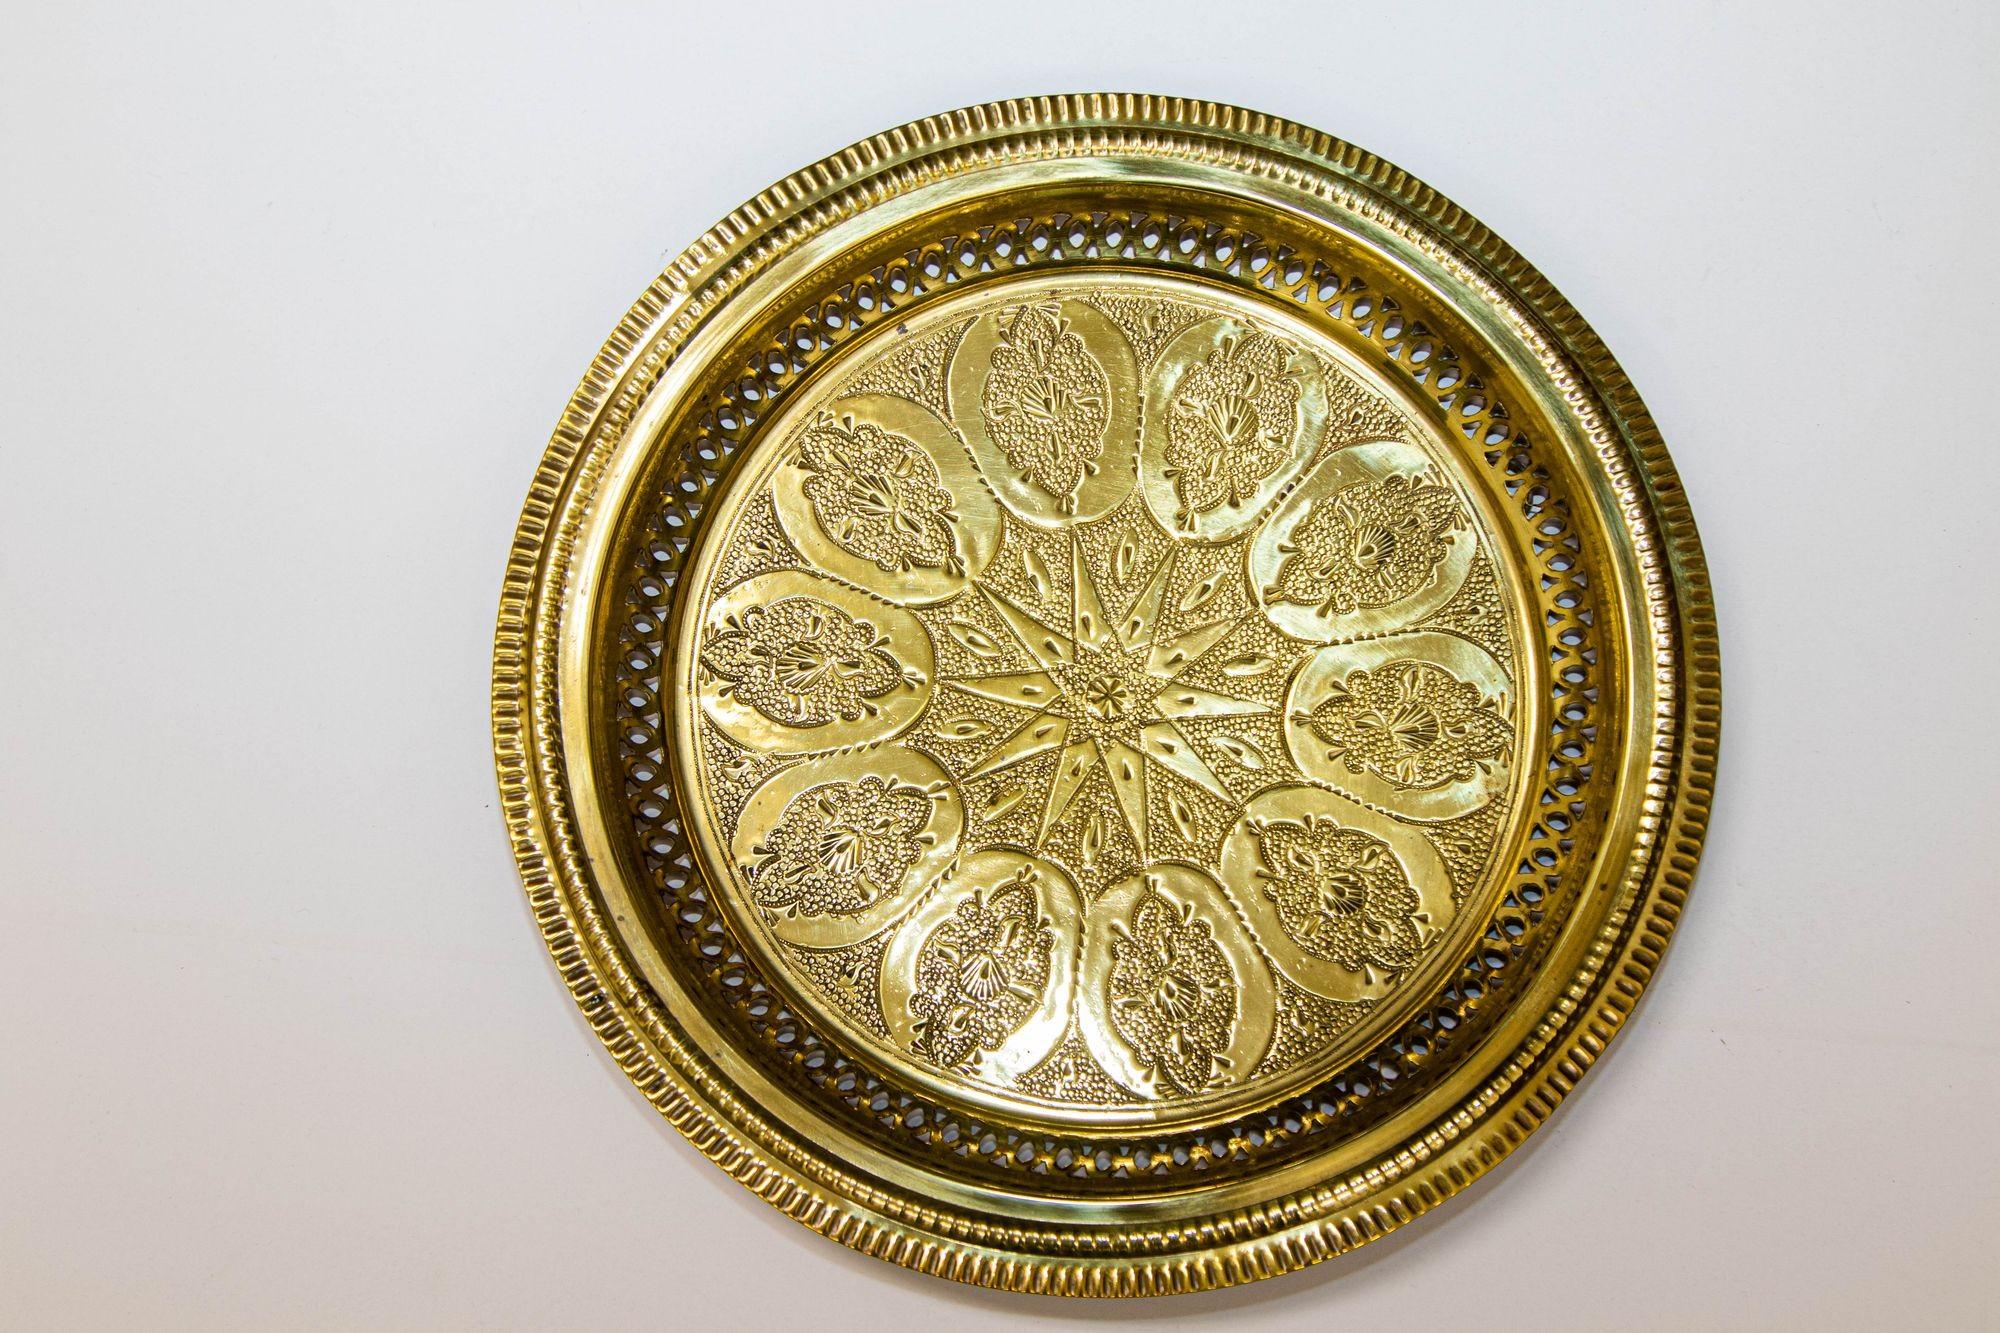 1940er Jahre marokkanischen Messing Tablett poliert Sammler islamischen Metallarbeiten 13,5 in. T
Schönes marokkanisches Deko-Tablett.
Einzigartig, ein Unikat, sehr sammelwürdig.
Abmessungen: 13.5 Zoll Durchmesser.
Handgefertigt in Fez, Marokko, um